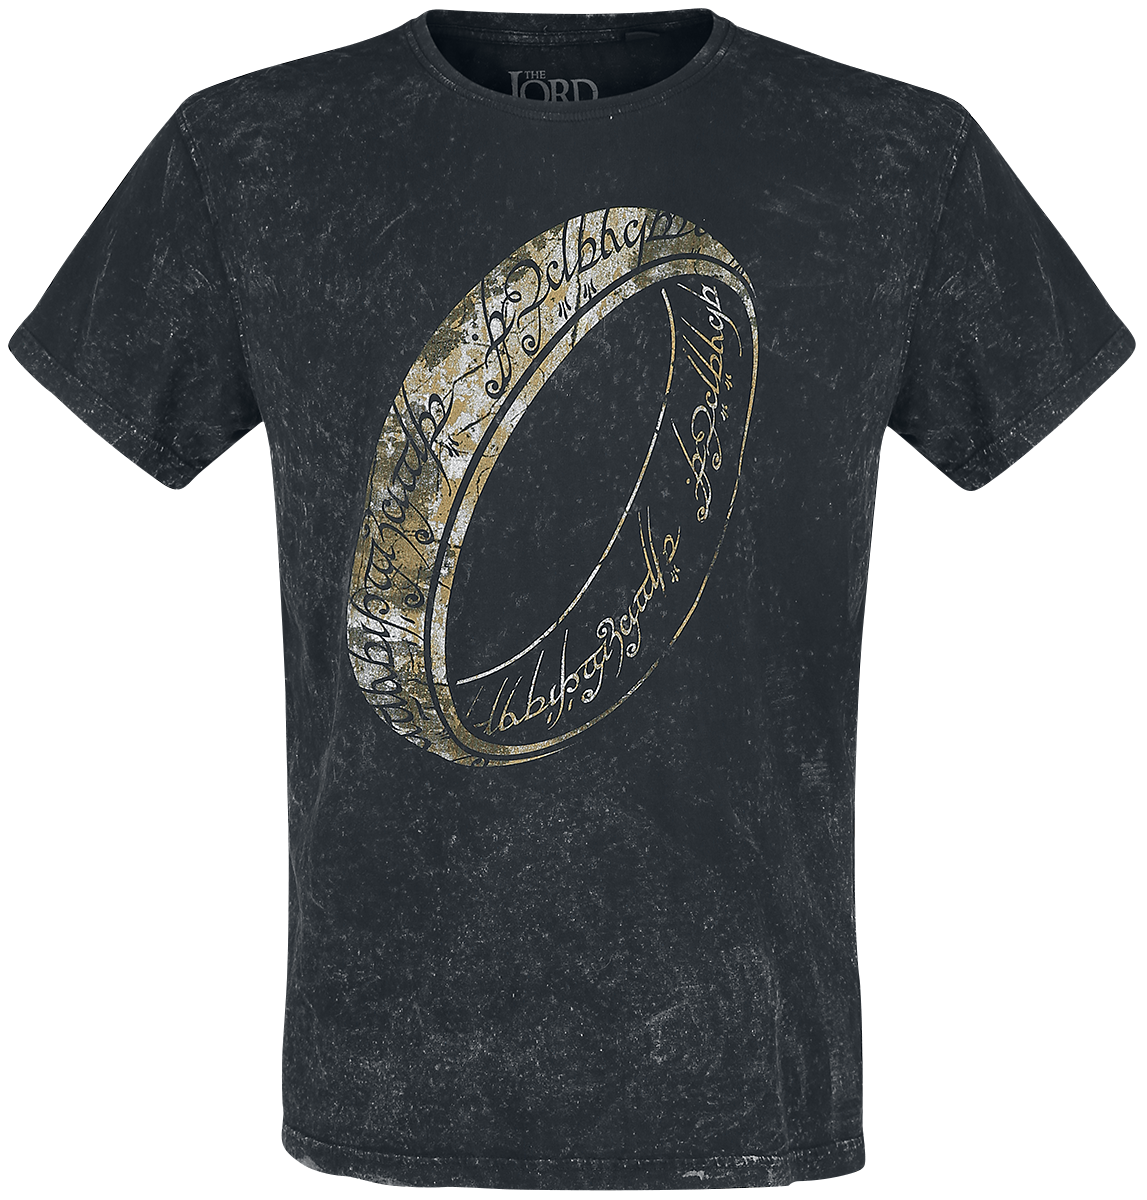 Der Herr der Ringe - One Ring To Rule Them All - T-Shirt - schwarz - EMP Exklusiv!